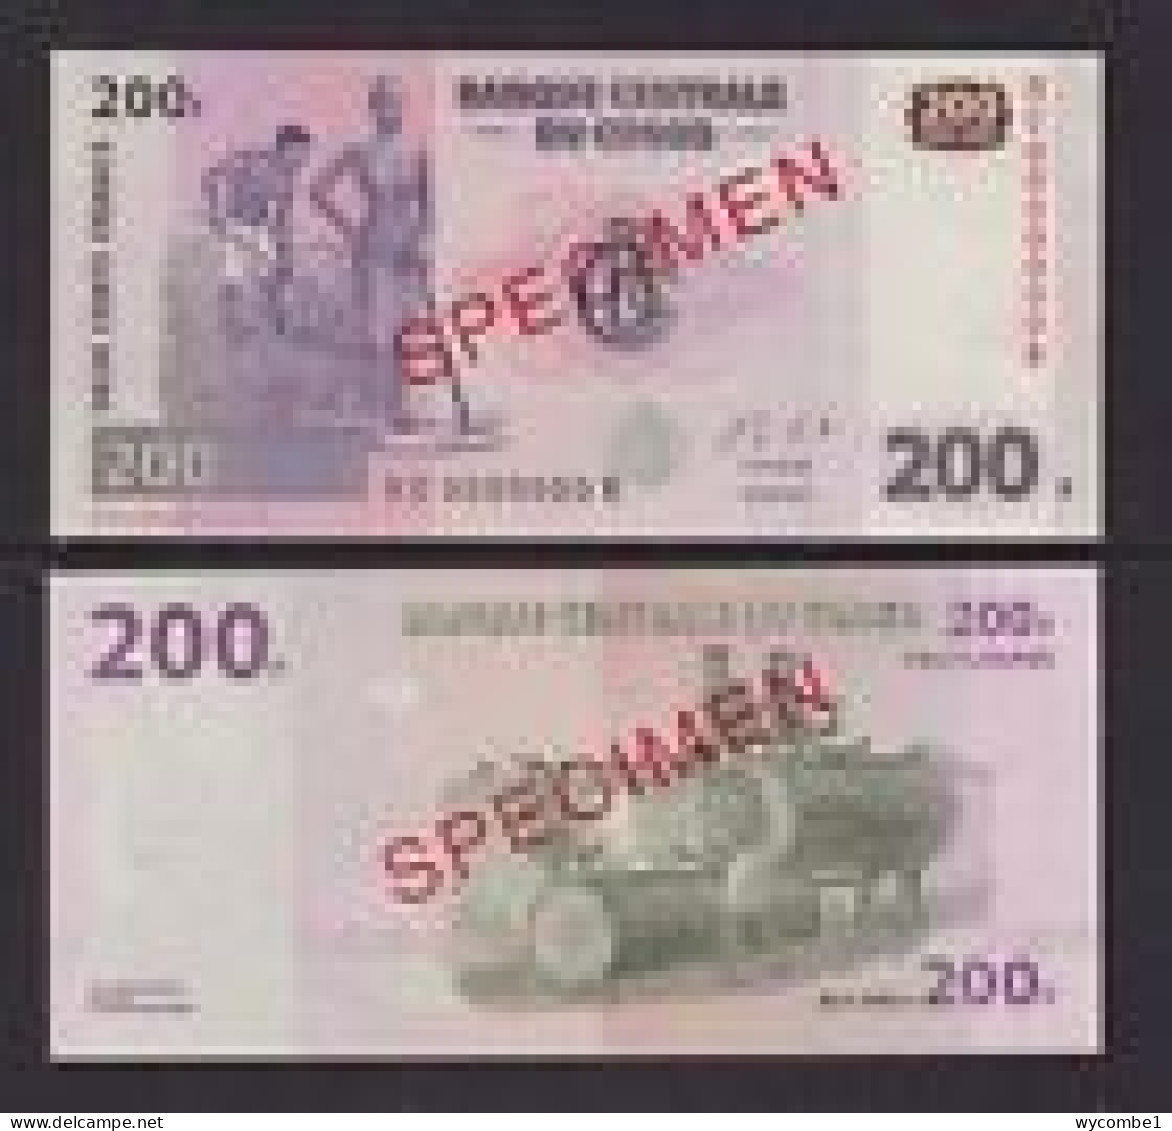 CONGO DR  -  2013 200 Francs Specimen UNC  Banknote - République Démocratique Du Congo & Zaïre